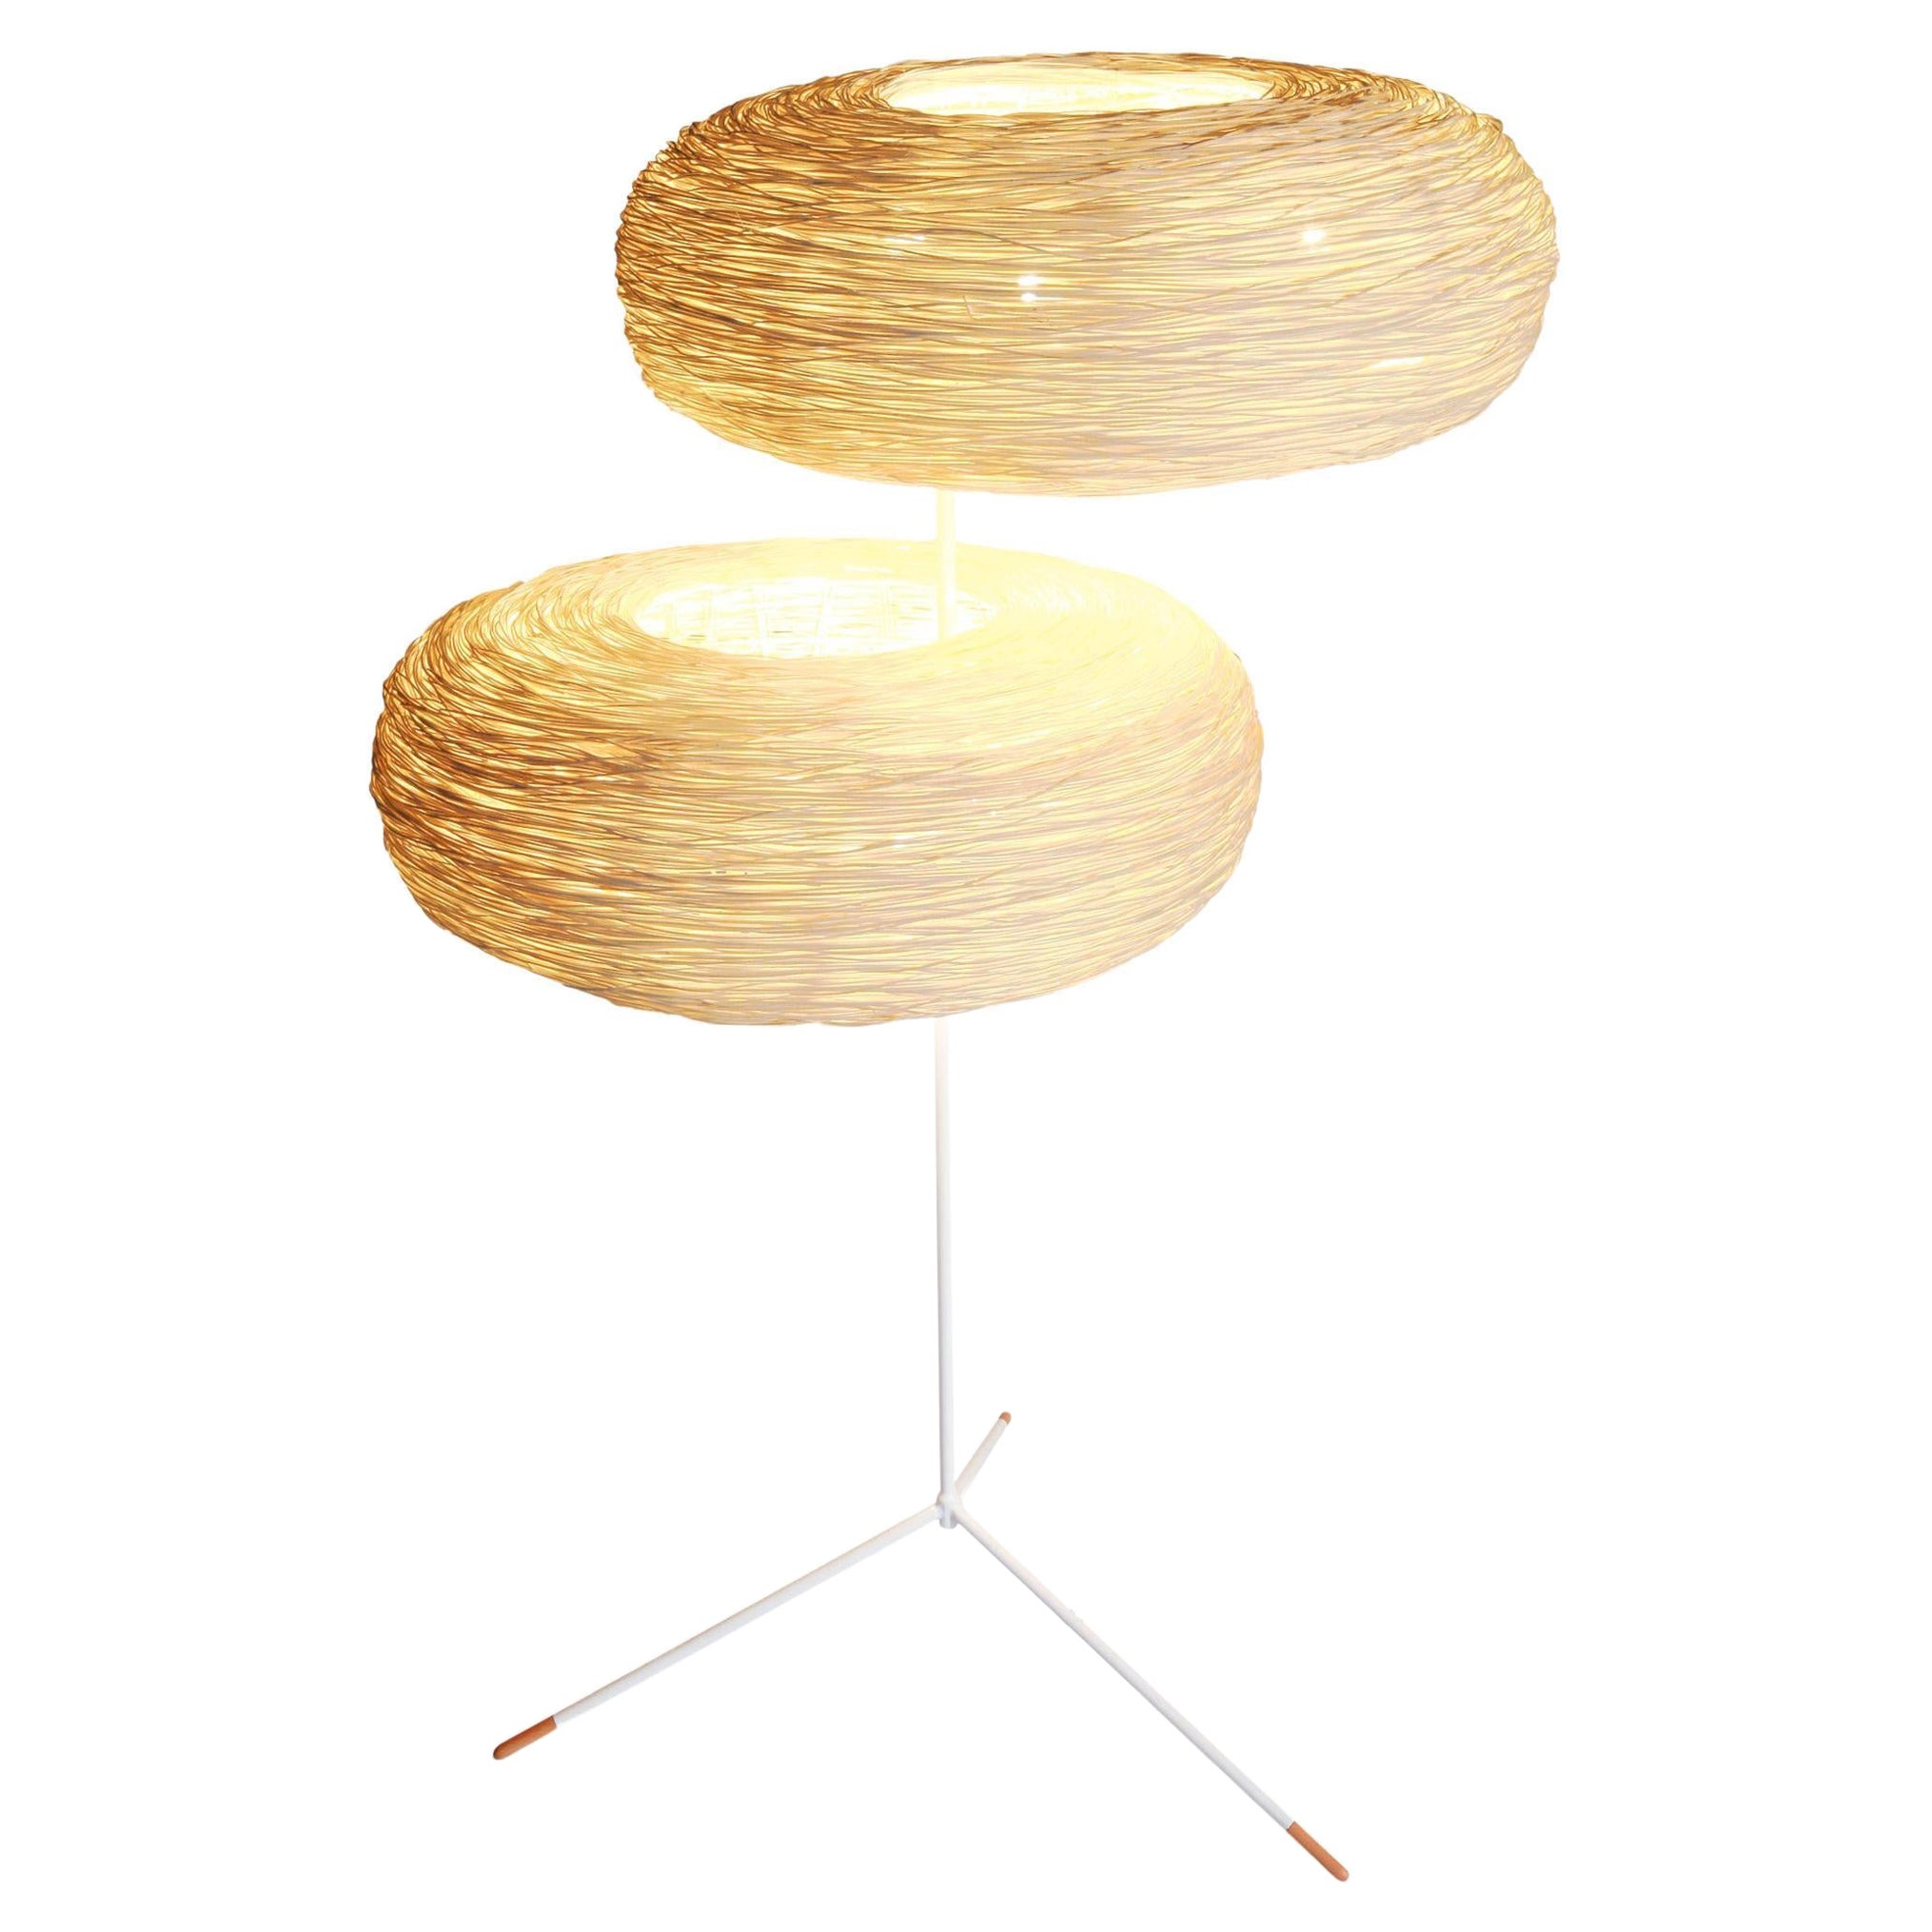 Double World von Ango, handgewebte Stehlampe aus doppeltem Rattan, Design